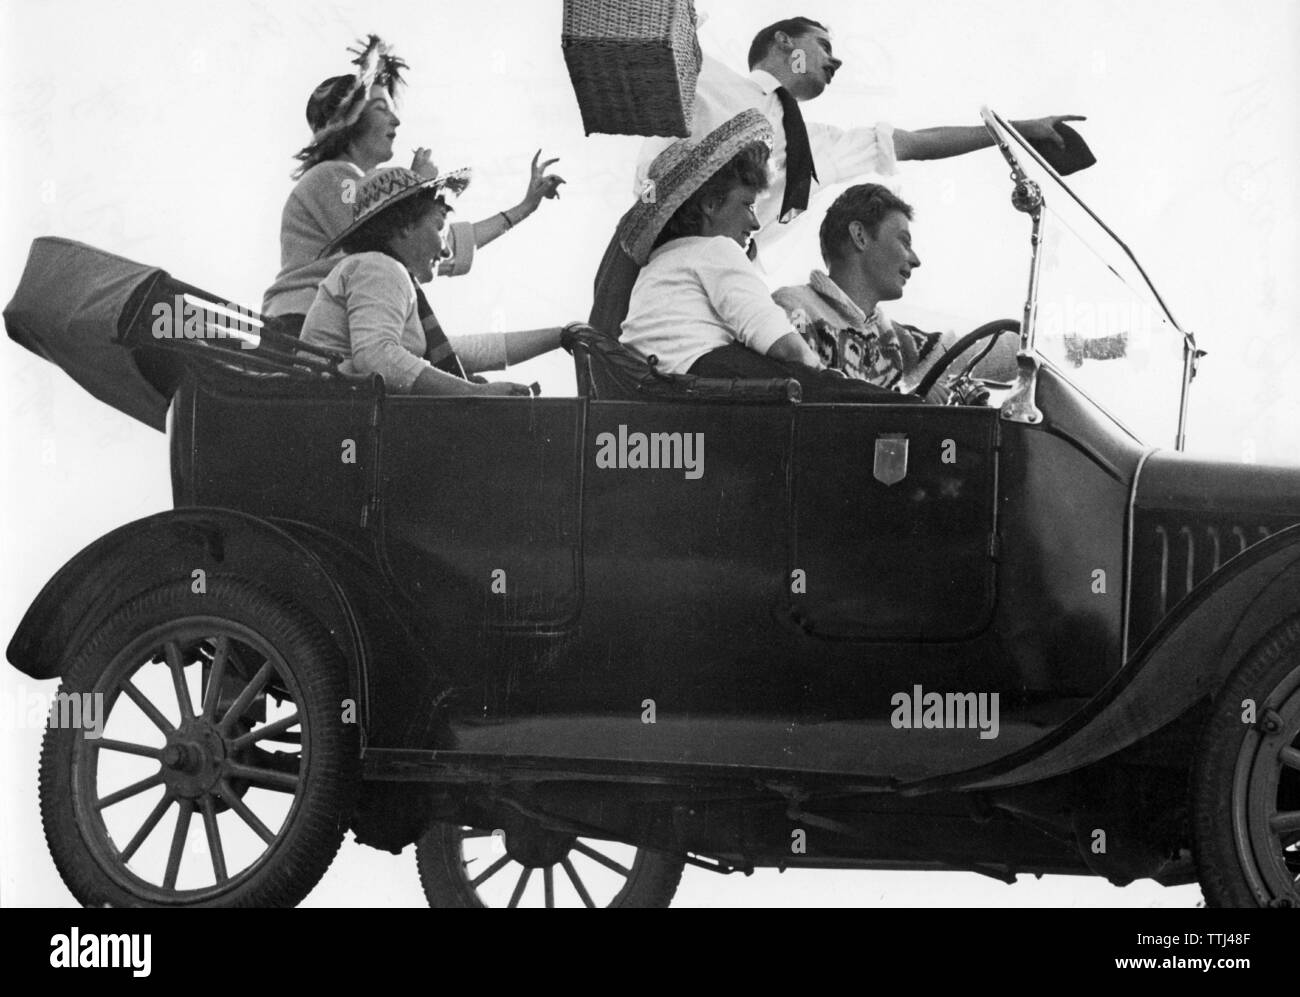 L'été avec leurs amis dans les années 50. Un groupe de jeunes a pris la voiture hors de la minuterie pour un lecteur d'avoir un pique-nique. Suède 1954 Banque D'Images